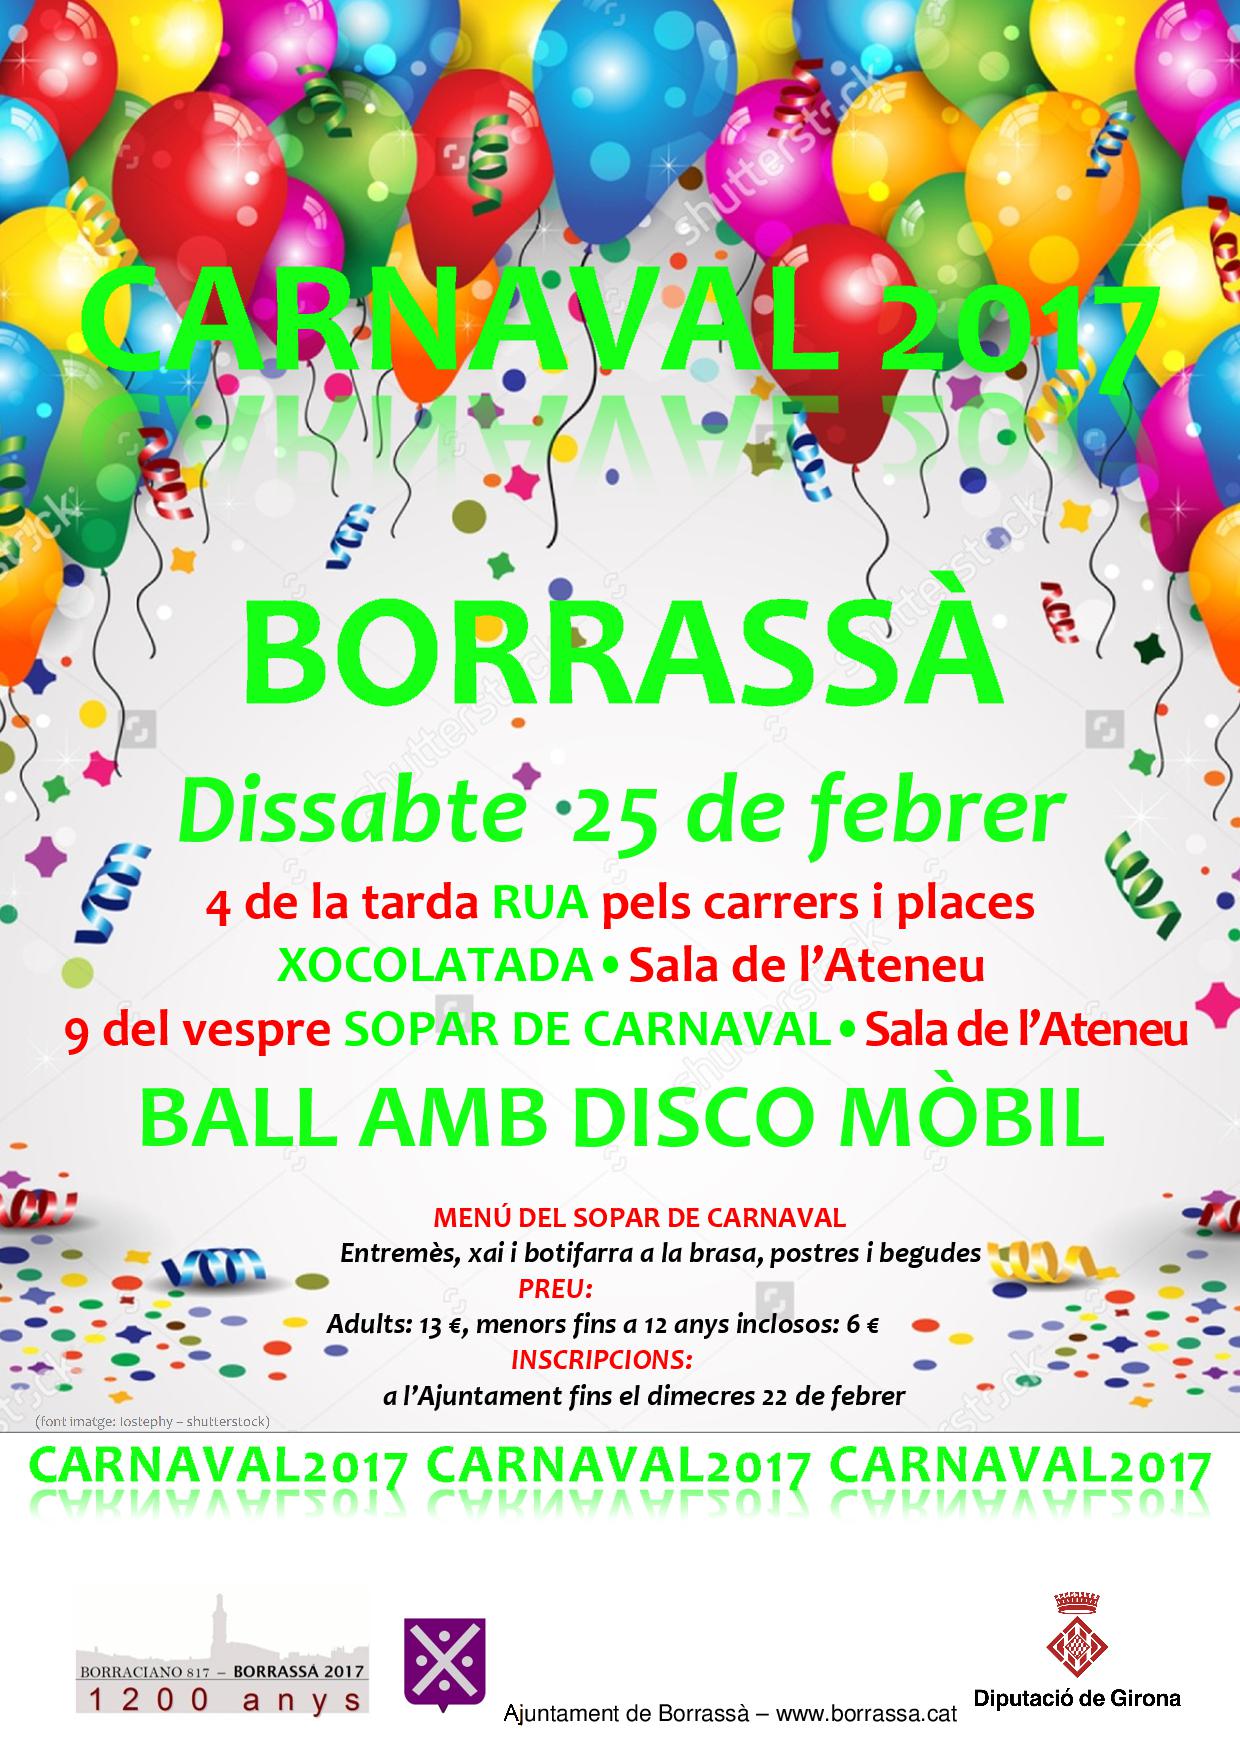 El dissabte 25 de febrer, Borrassà es disfressarà. El carnaval 2017 començarà a les 4 de la tarda amb una Rua pels carrers i places del poble.